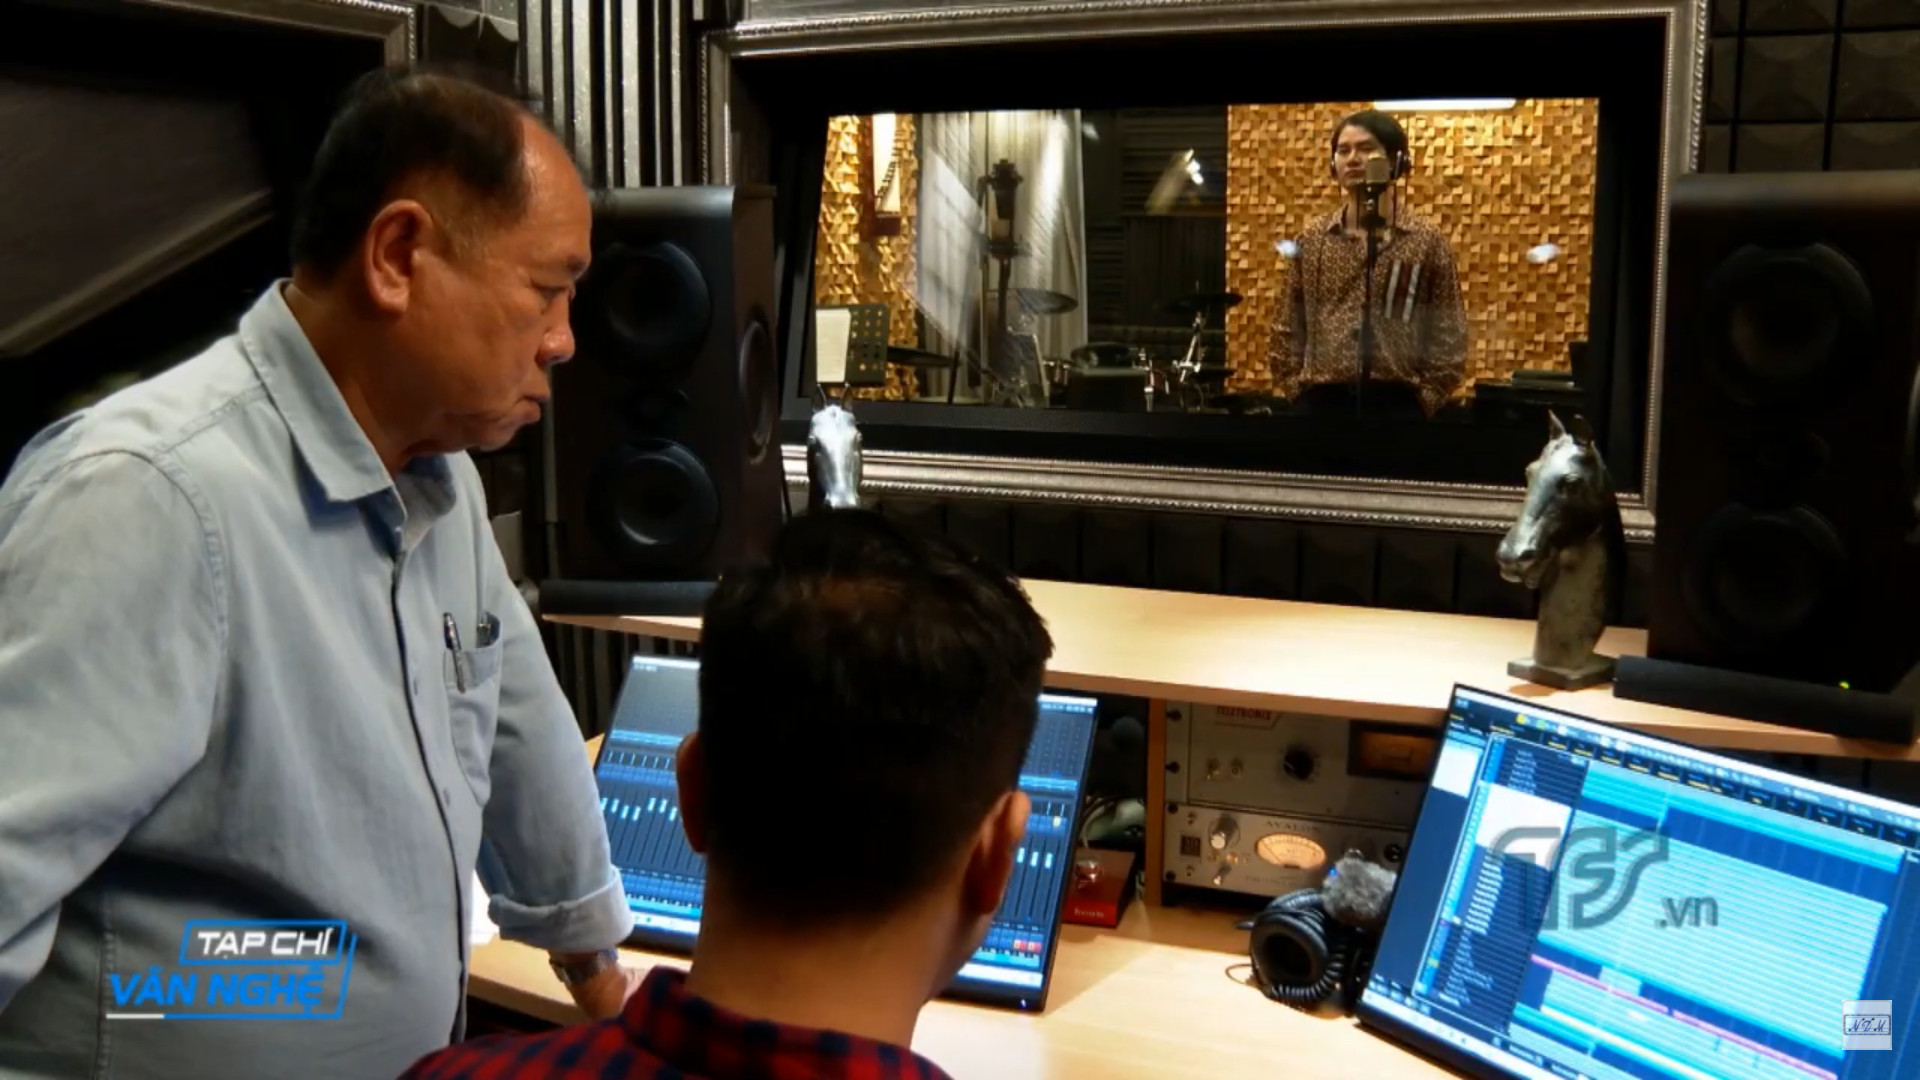 Quá trình thu âm ca khúc Tiếng vọng Hoàng Sa Trường Sa của nhạc sĩ Nguyễn Đức, ca sĩ Đào Mác tại phòng thu âm Nguyễn Đức Music